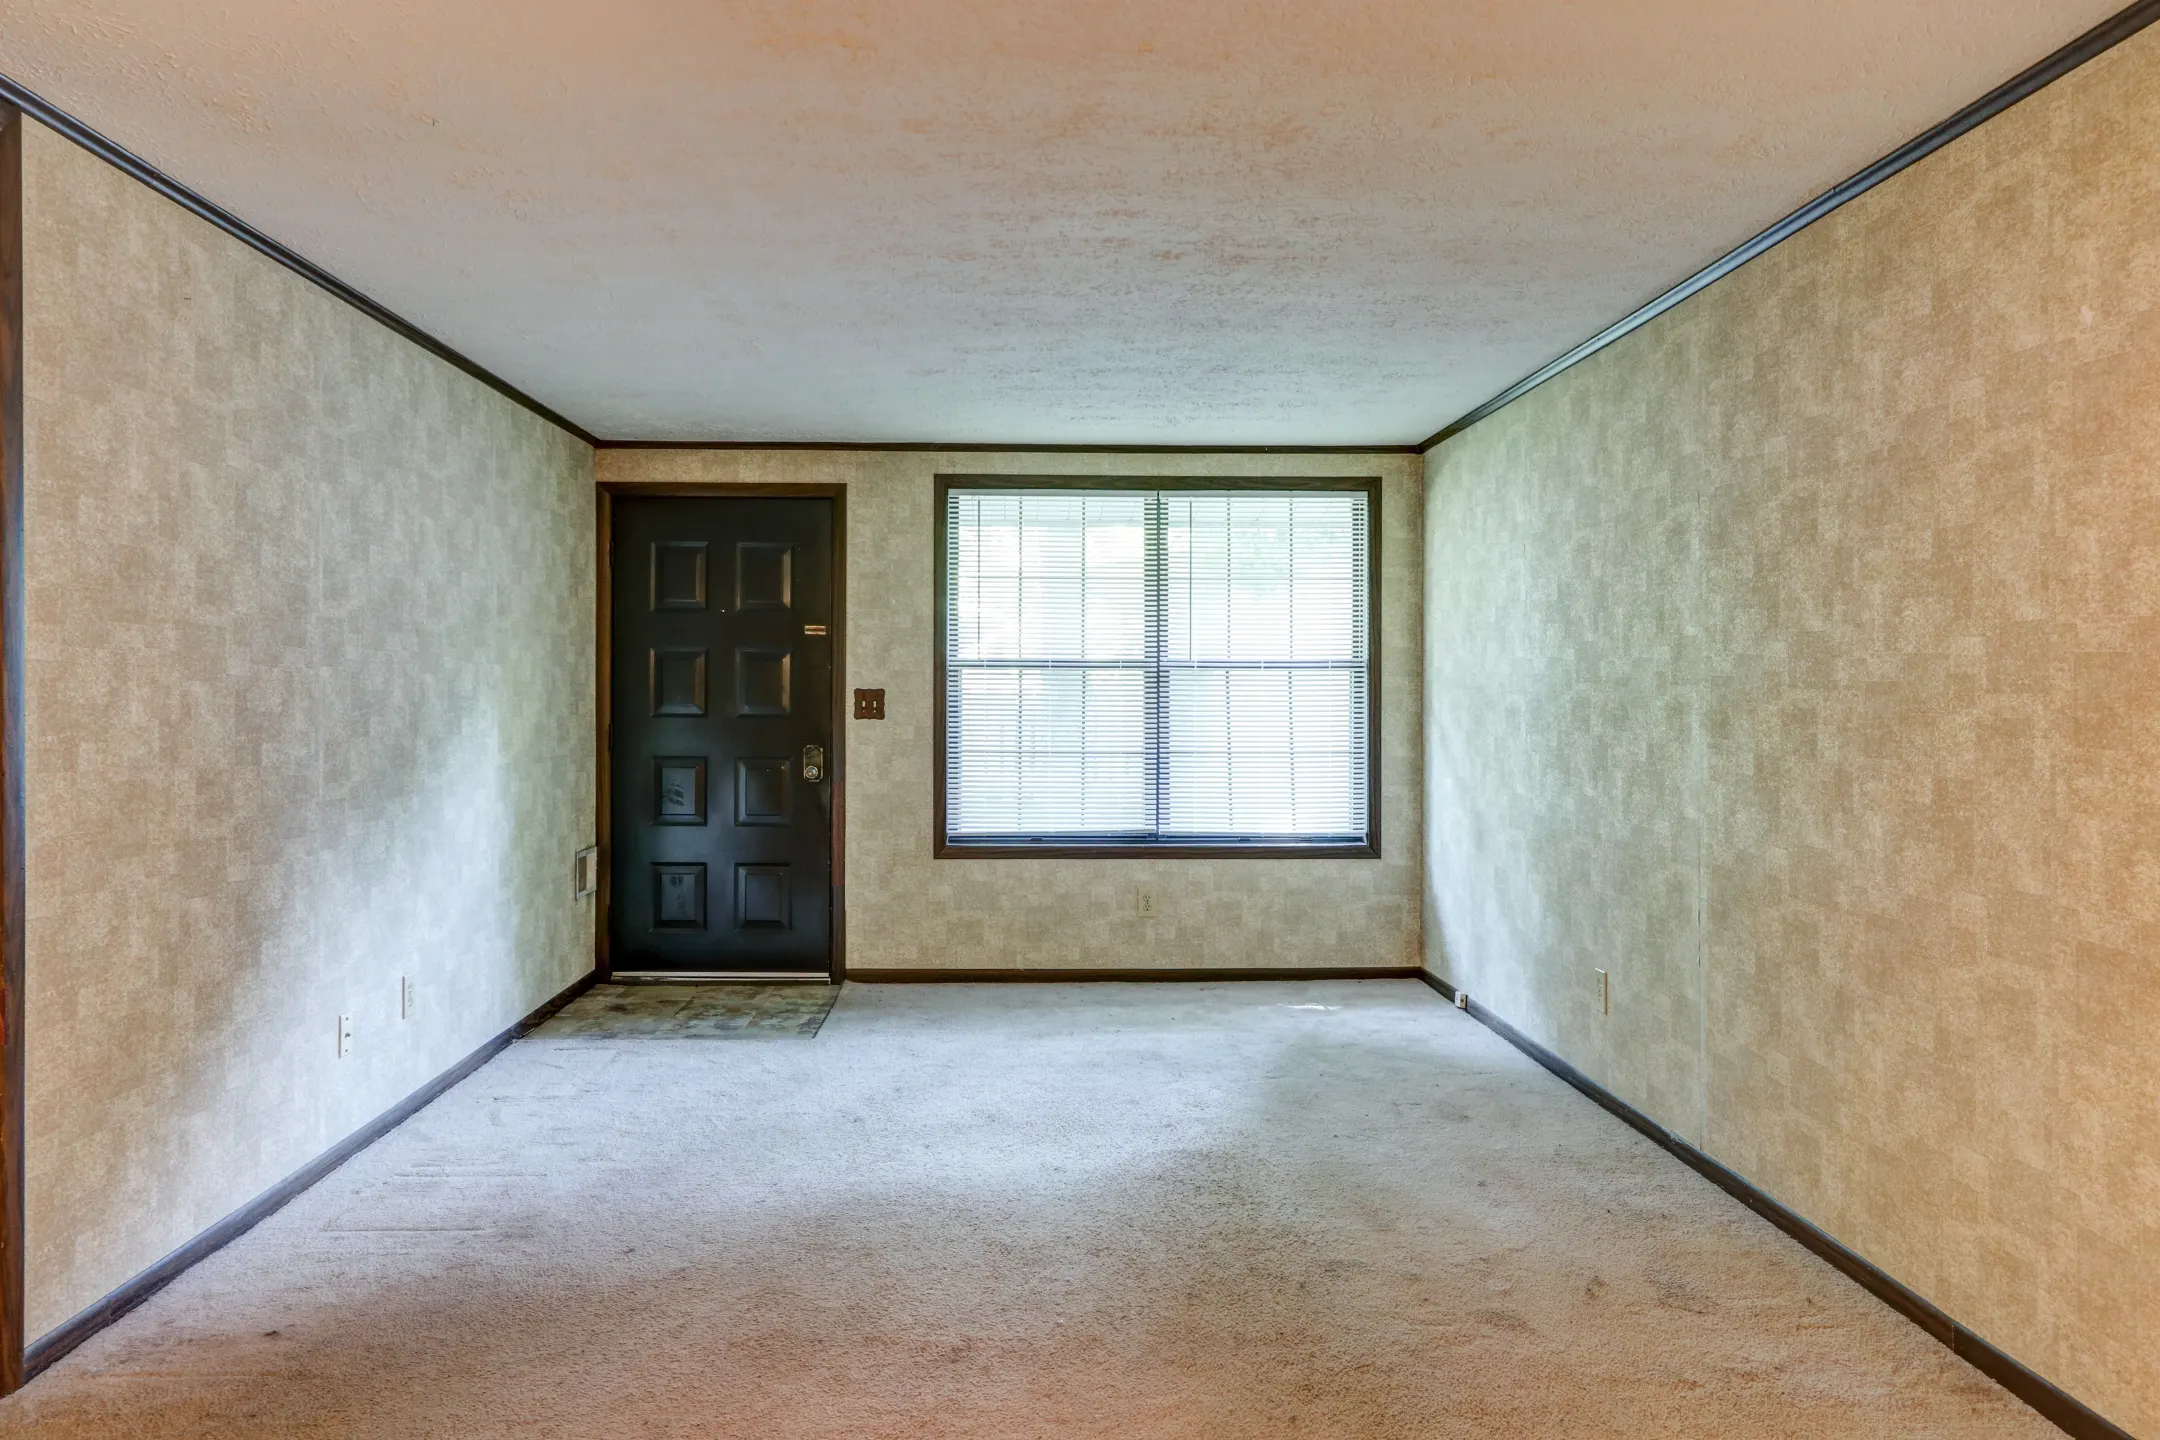 Living Room - Scioto Fairway Woods - Columbus, OH